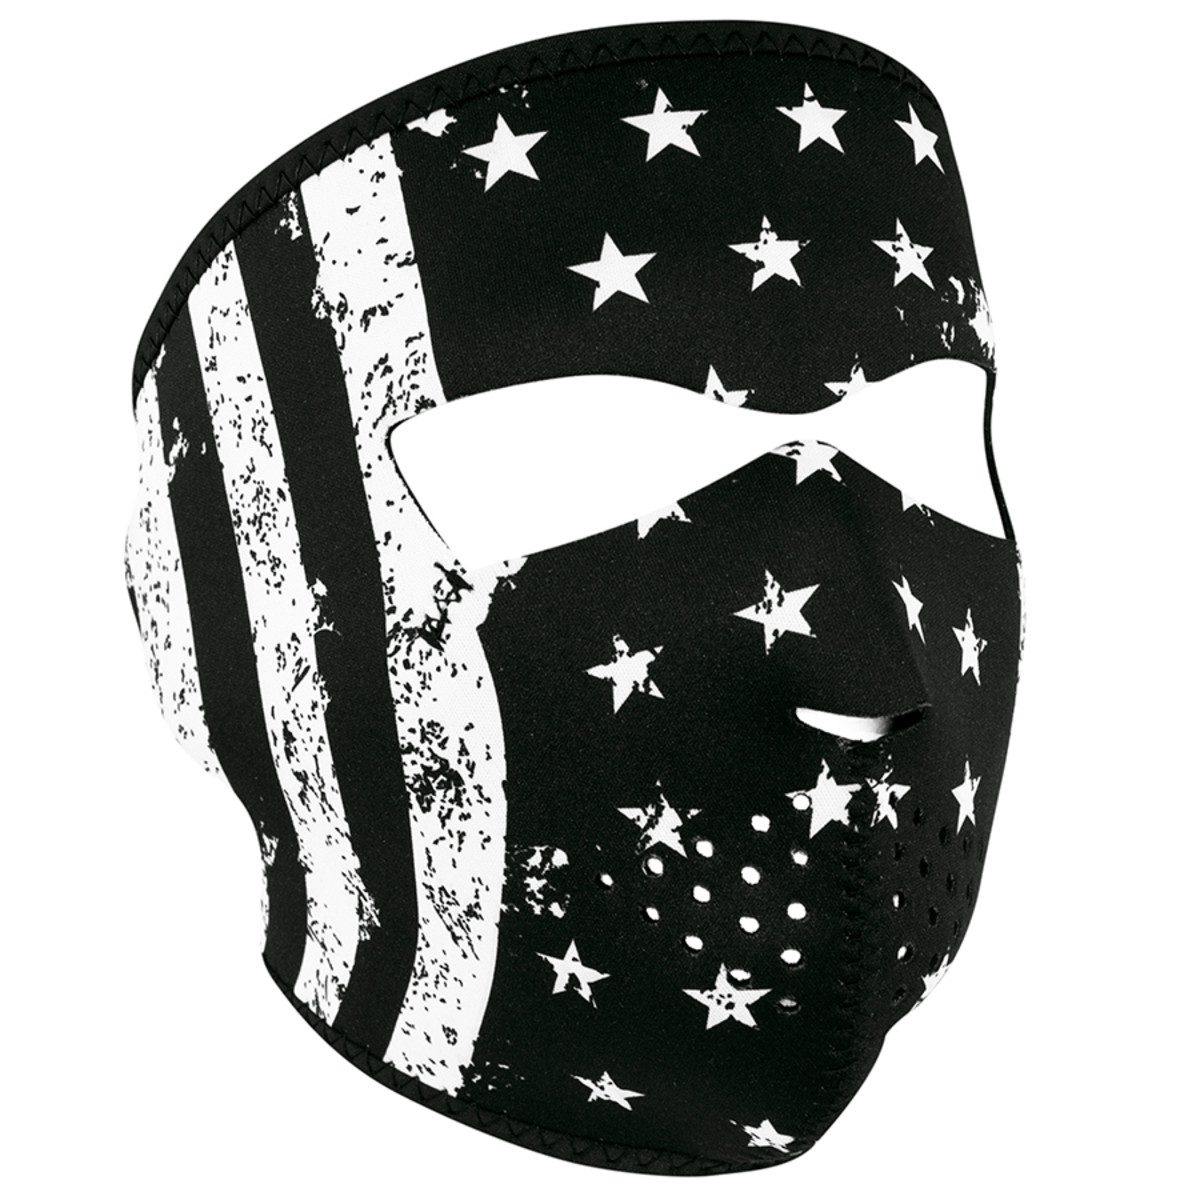 Zan Headgear Neoprene Full Face Mask - Black and White Flag